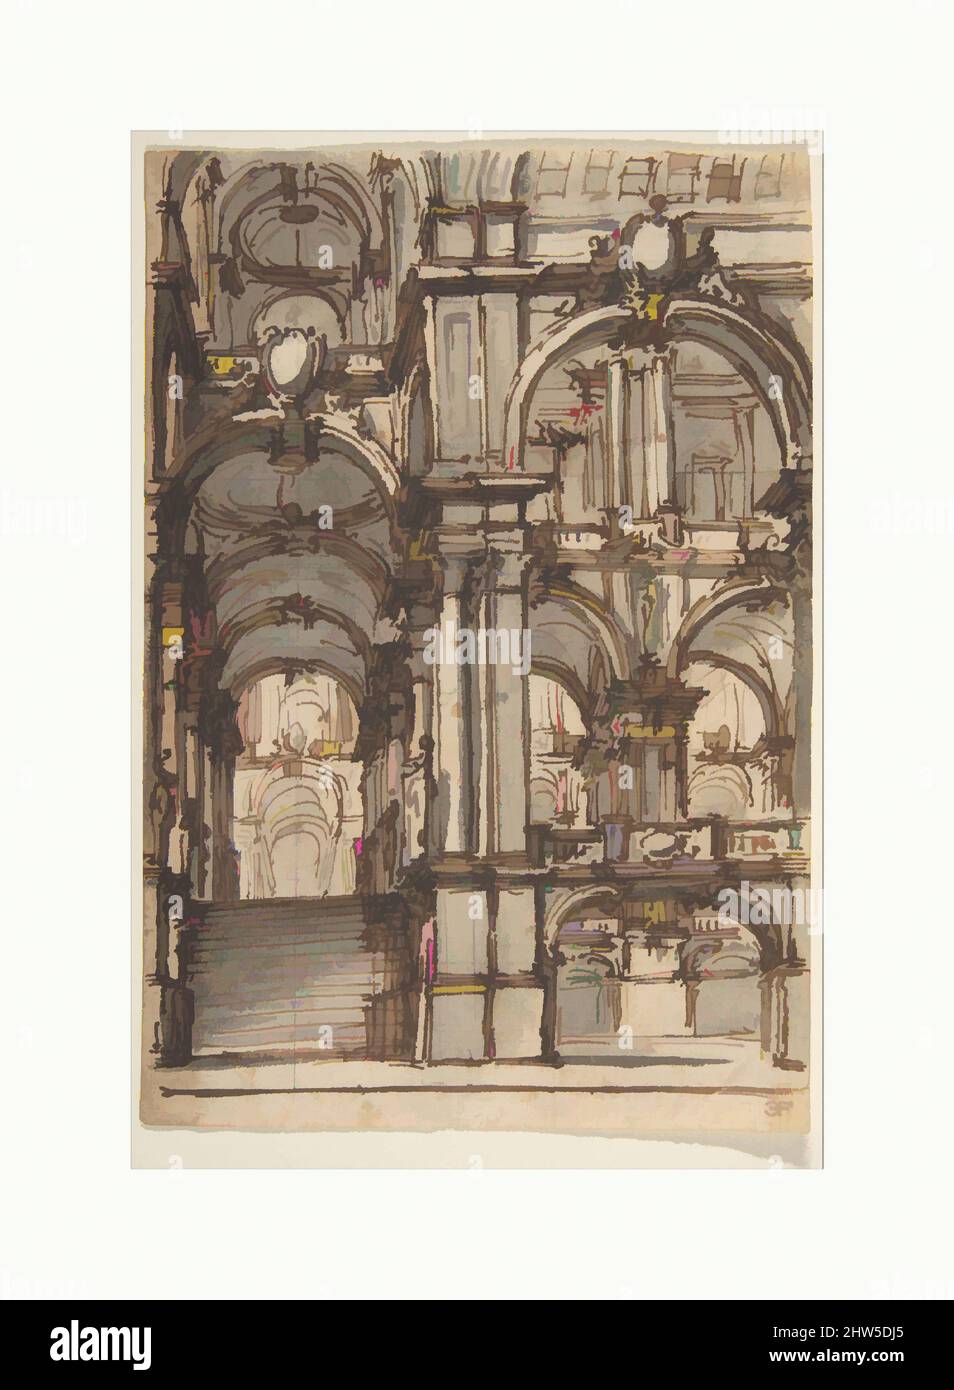 Von Design inspirierte Kunst für ein Bühnenbild: Treppenhaus und Arkaden, die zu einem Salone führen, 1698–1765, Stift und braune Tinte, Pinsel mit brauner und grauer Wäsche, über Graphit oder schwarzer Kreide, 5 7/8 x 4in. (14,9 x 10,2cm), Zeichnungen, Giovanni Battista Natali III (Italienisch, Pontremoli, Toskana 1698–1765, Klassische Werke, die von Artotop mit einem Schuss Moderne modernisiert wurden. Formen, Farbe und Wert, auffällige visuelle Wirkung auf Kunst. Emotionen durch Freiheit von Kunstwerken auf zeitgemäße Weise. Eine zeitlose Botschaft, die eine wild kreative neue Richtung verfolgt. Künstler, die sich dem digitalen Medium zuwenden und die Artotop NFT erschaffen Stockfoto